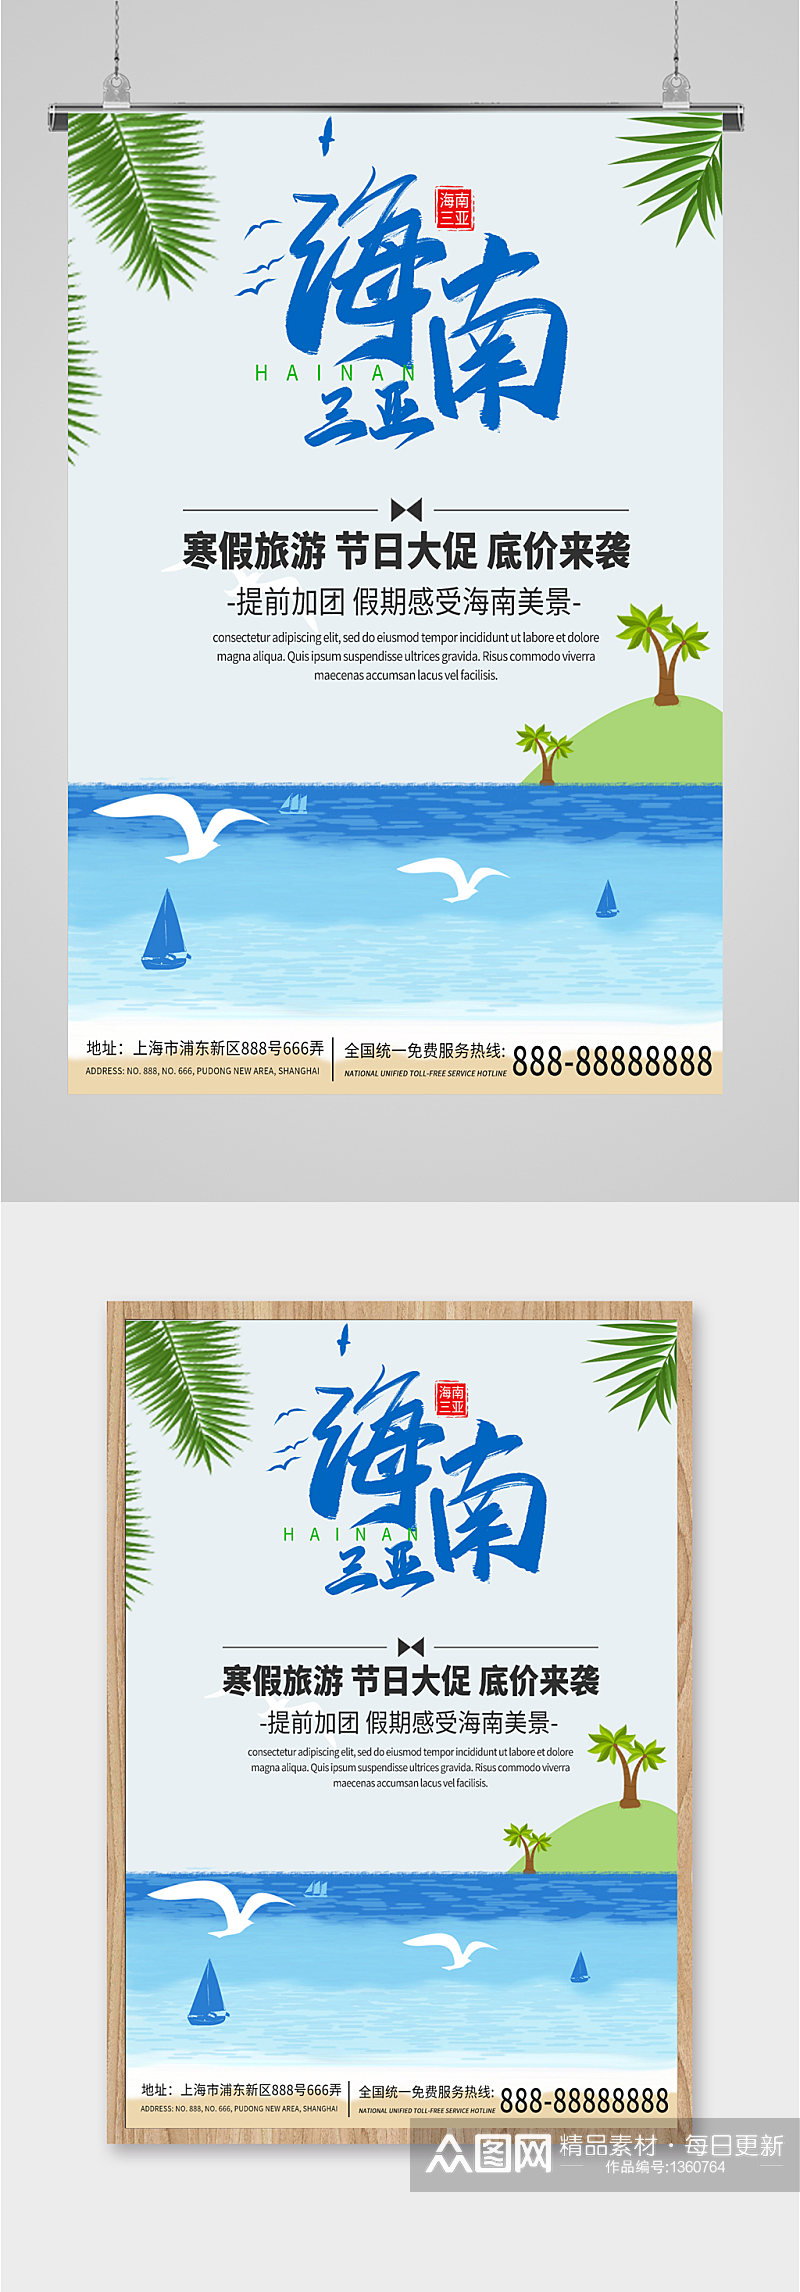 海南三亚旅游海报展板素材